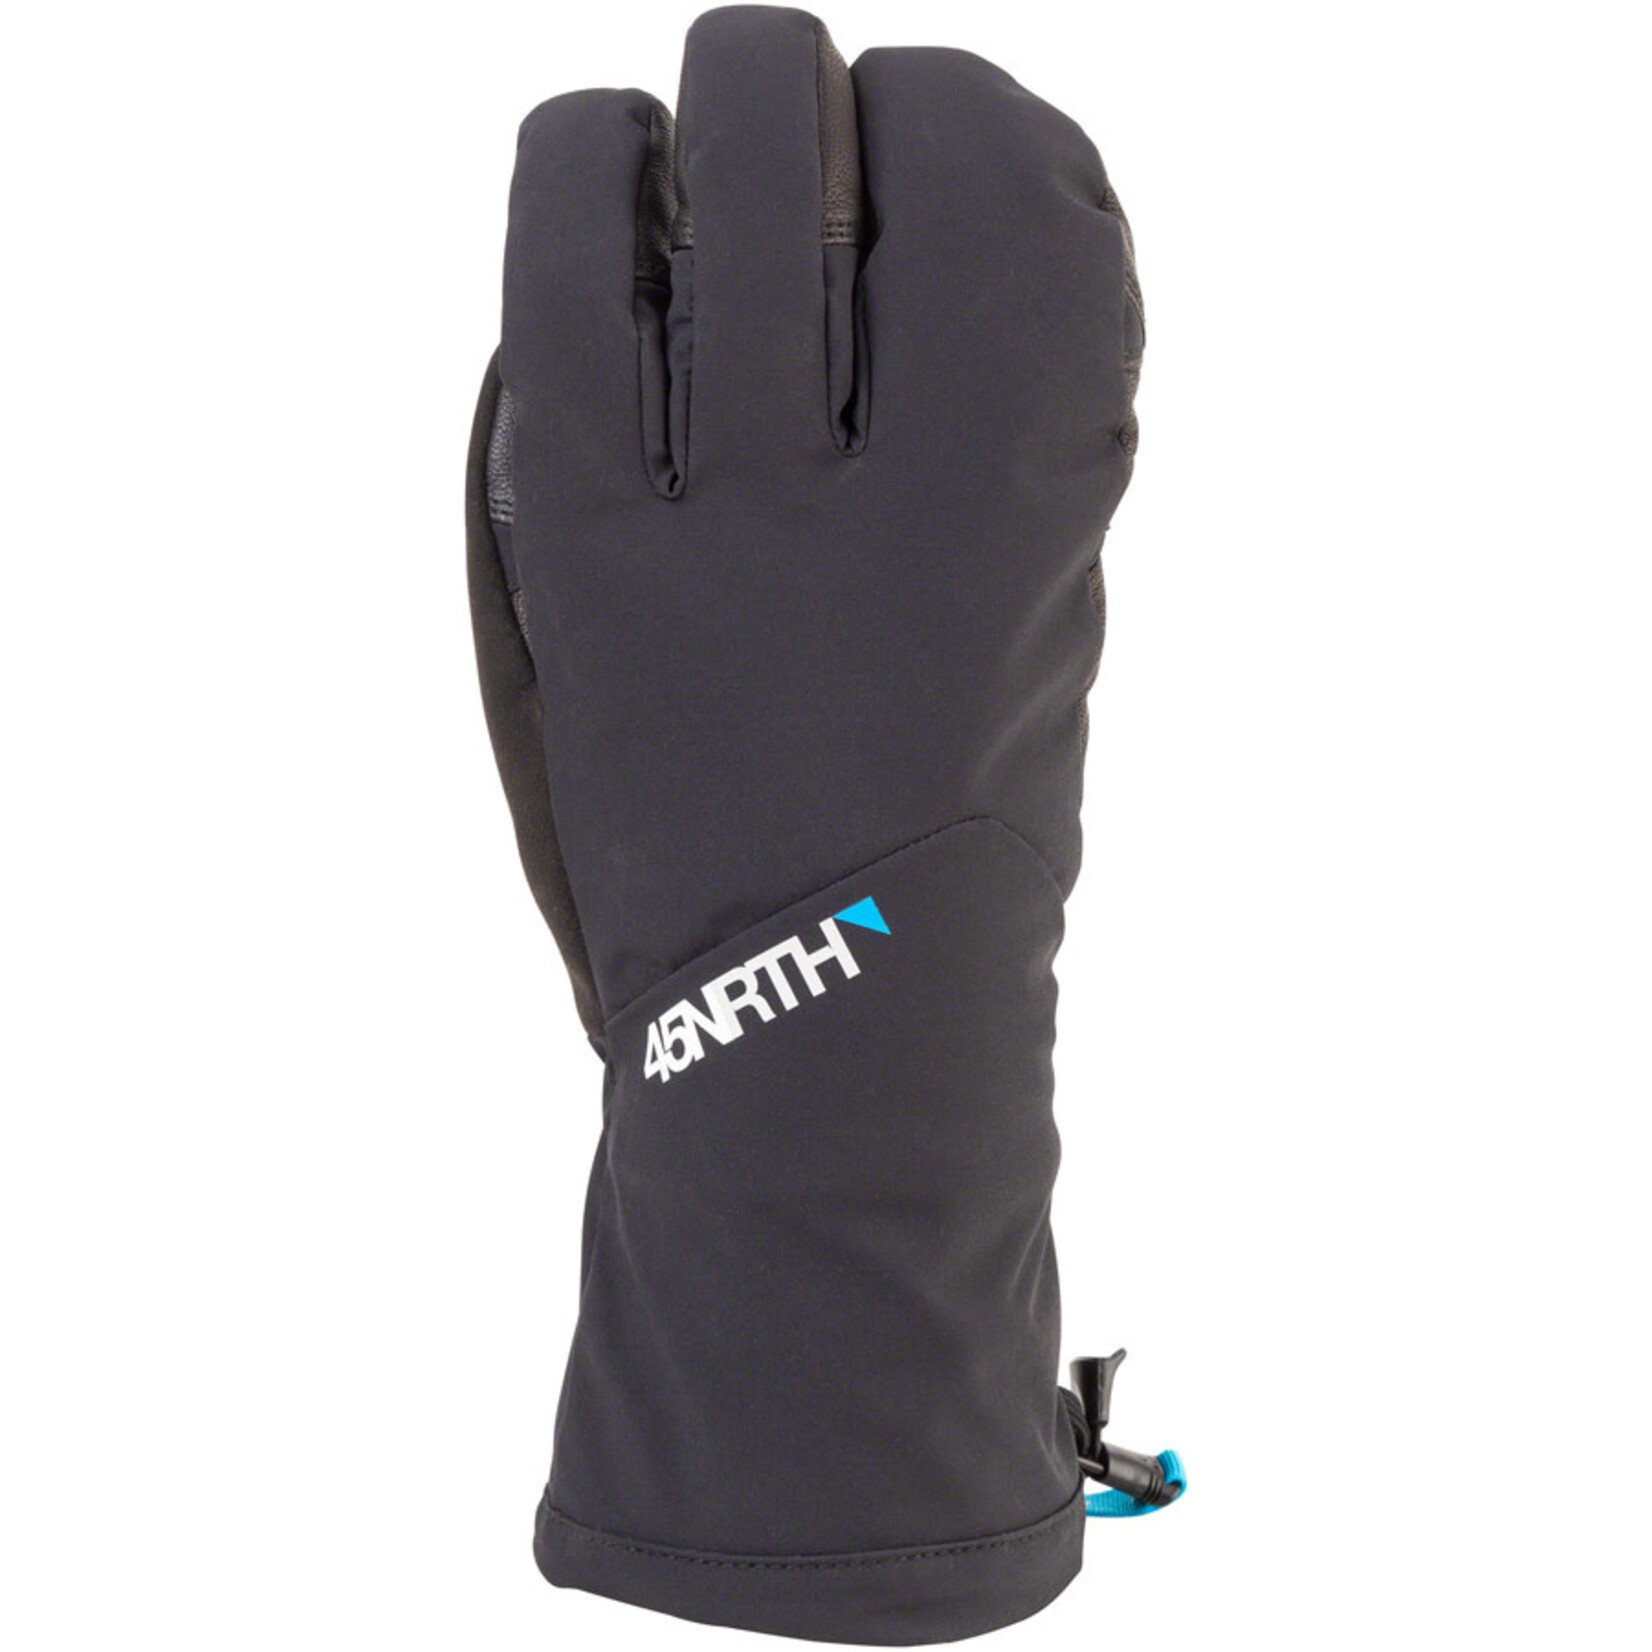 45NRTH 45NRTH Sturmfist 4 Finger Glove - Black, Full Finger, Large (9)